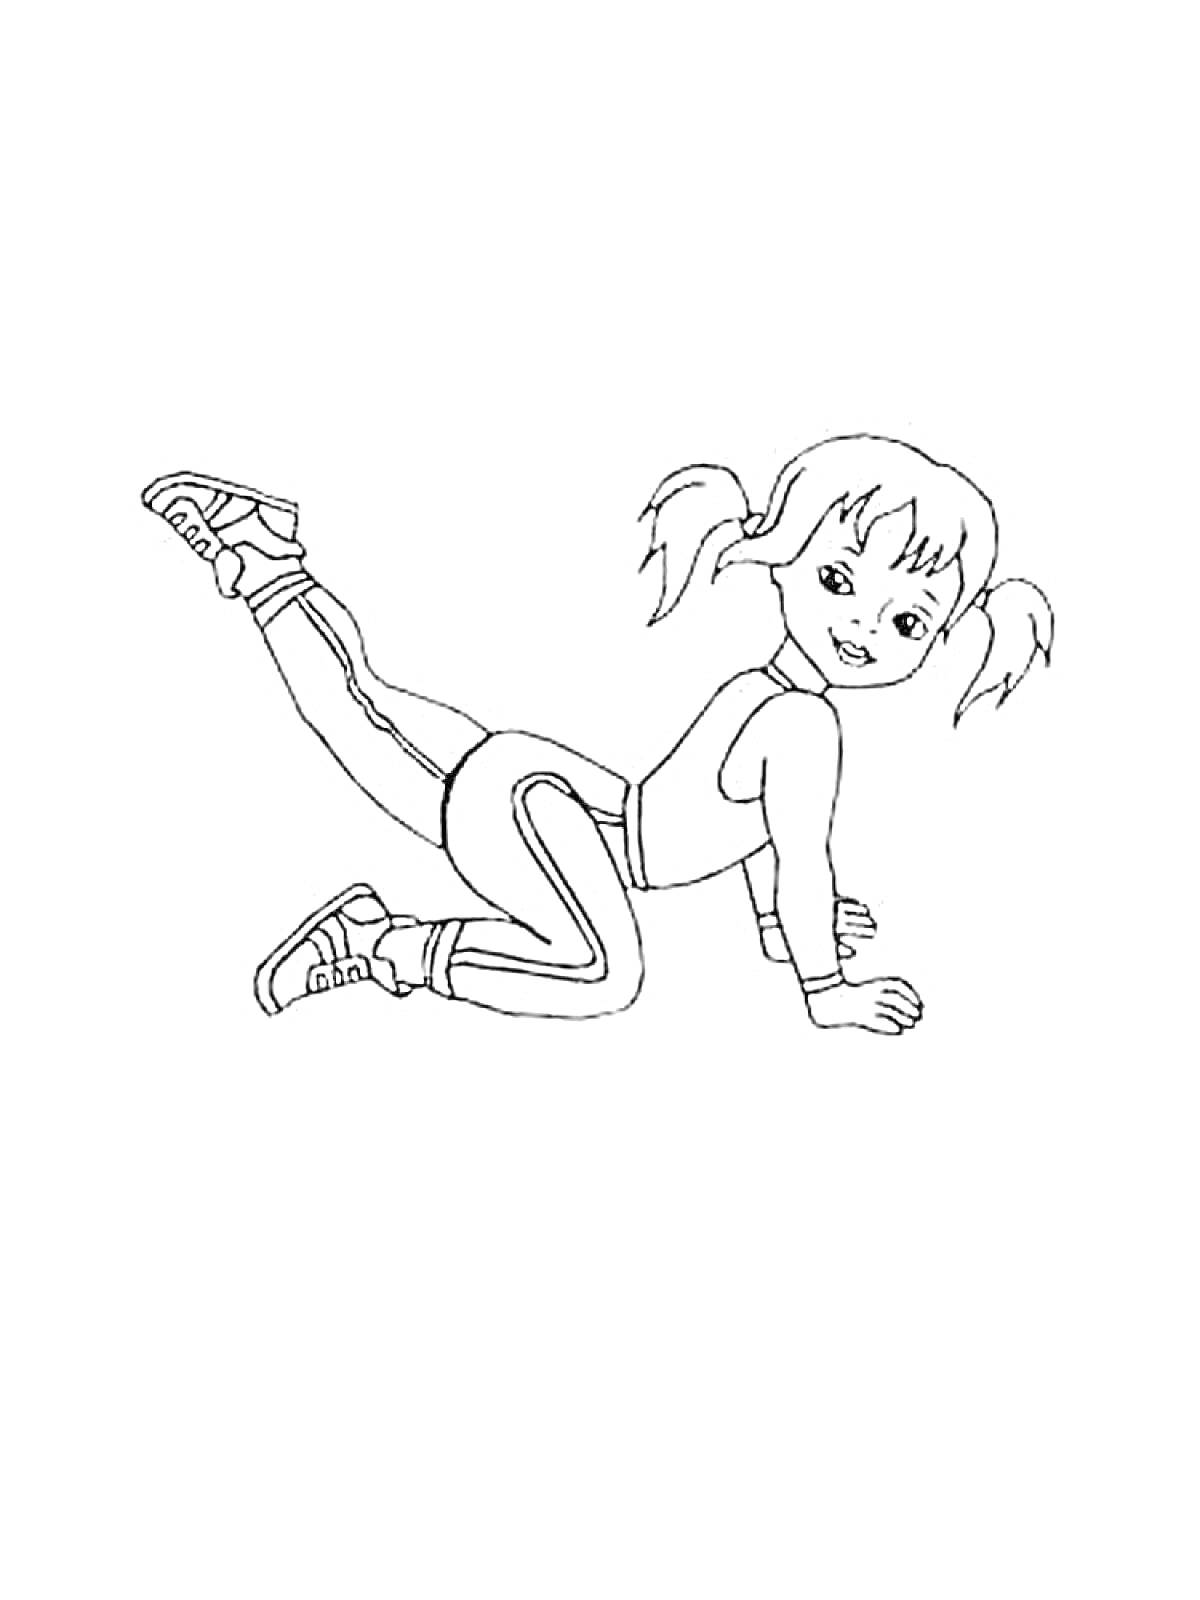 Раскраска Девочка на коленях делает упражнение, поднимая одну ногу назад.